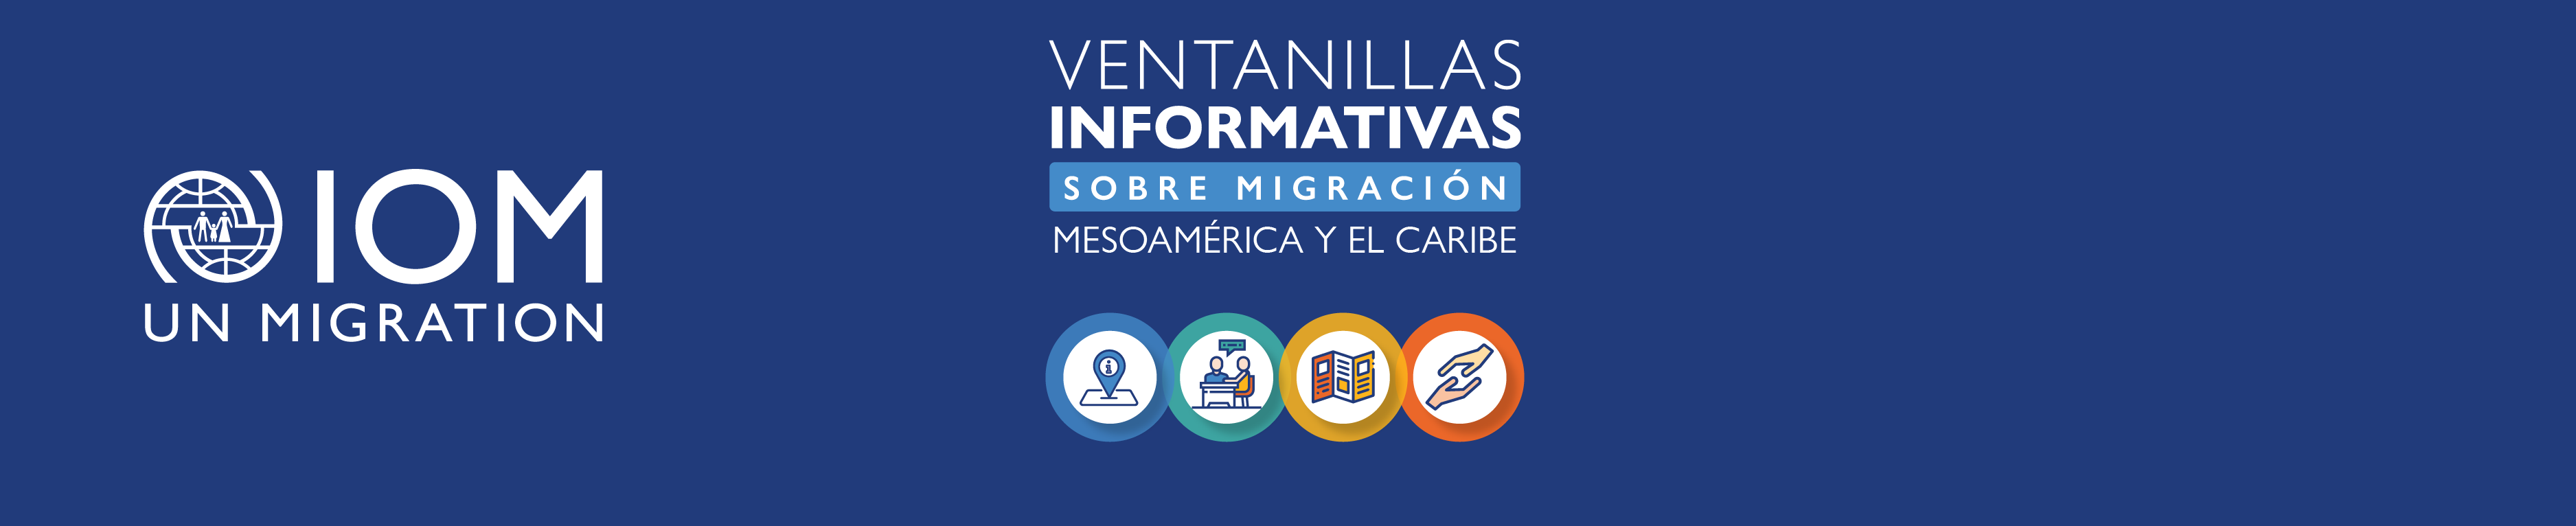 Ventanillas informativas sobre migración: Mesoamérica y el Caribe